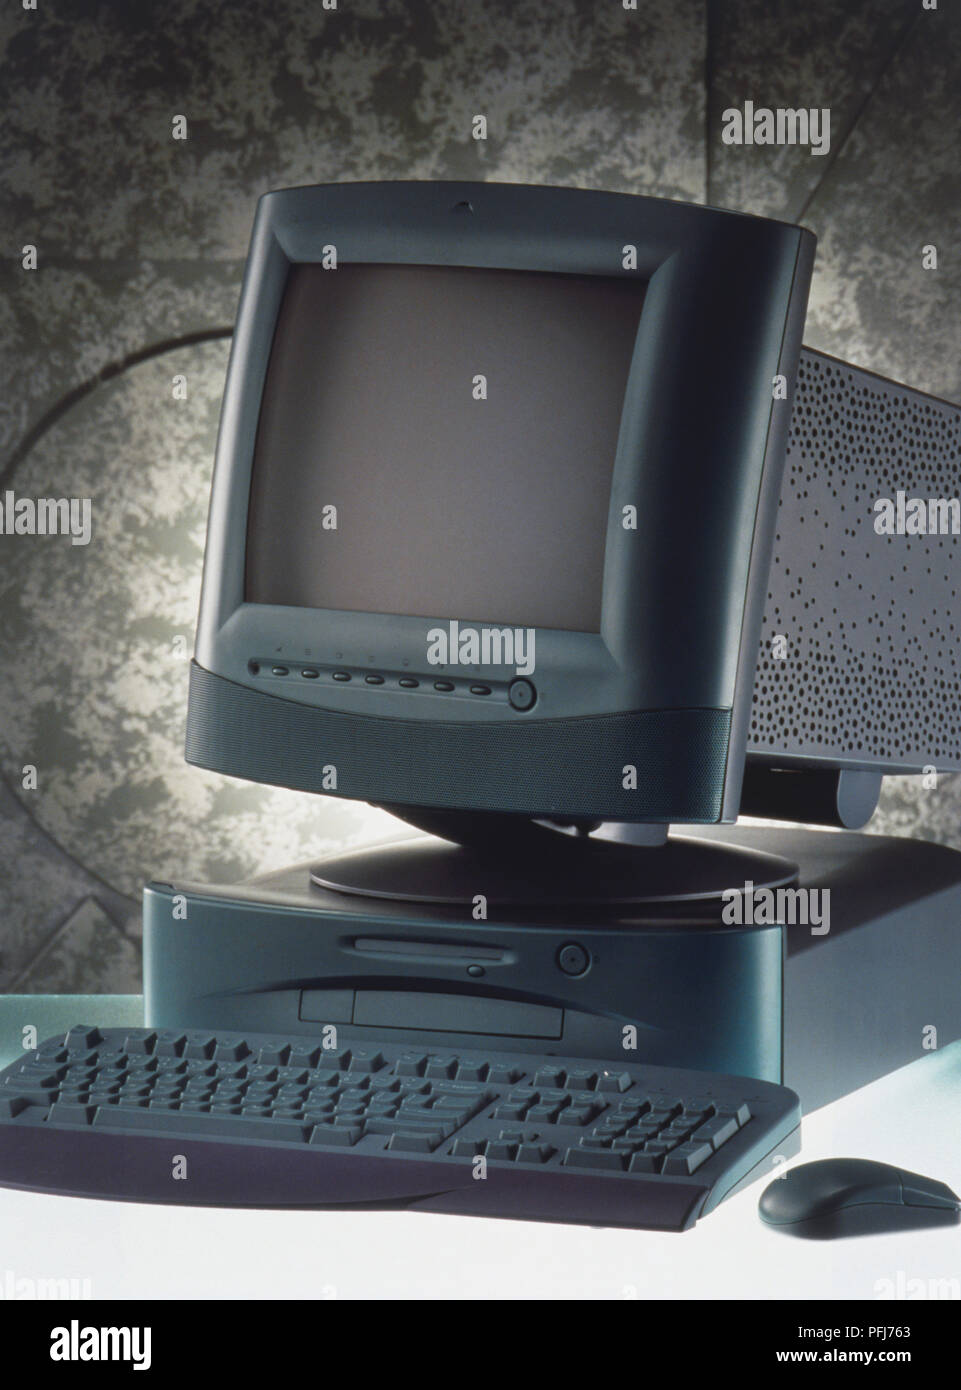 1996 ordinateur personnel, vue de face Photo Stock - Alamy